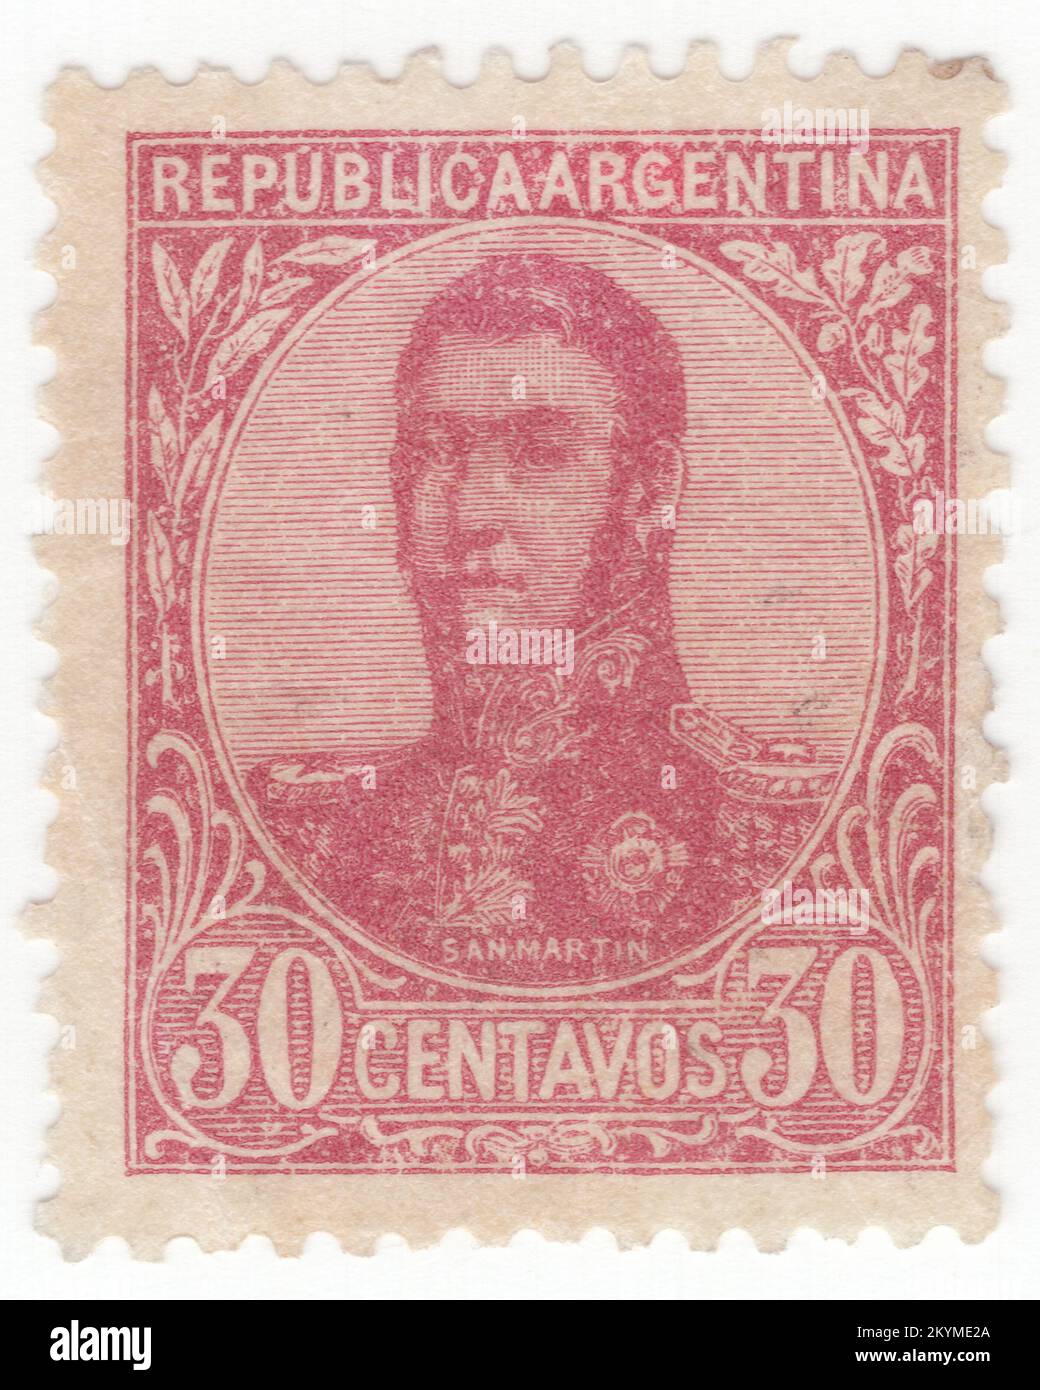 ARGENTINIEN - 1908: 30 Centavos-Briefmarke mit stumpfen Rosen, die ein Porträt von José de San Martín (Jose Francisco de San Martín y Matorras) darstellt, der als Liberator von Argentinien, Chile und Peru bekannt ist. Argentinischer General und der Hauptführer des südlichen und zentralen Teils des erfolgreichen Kampfes Südamerikas für die Unabhängigkeit vom Spanischen Reich, der als Beschützer von Peru diente. Geboren in Yapeyú, Corrientes, im modernen Argentinien, verließ er im frühen Alter von sieben Jahren das Vizekanzler der Río de la Plata, um in Málaga, Spanien, zu studieren Stockfoto